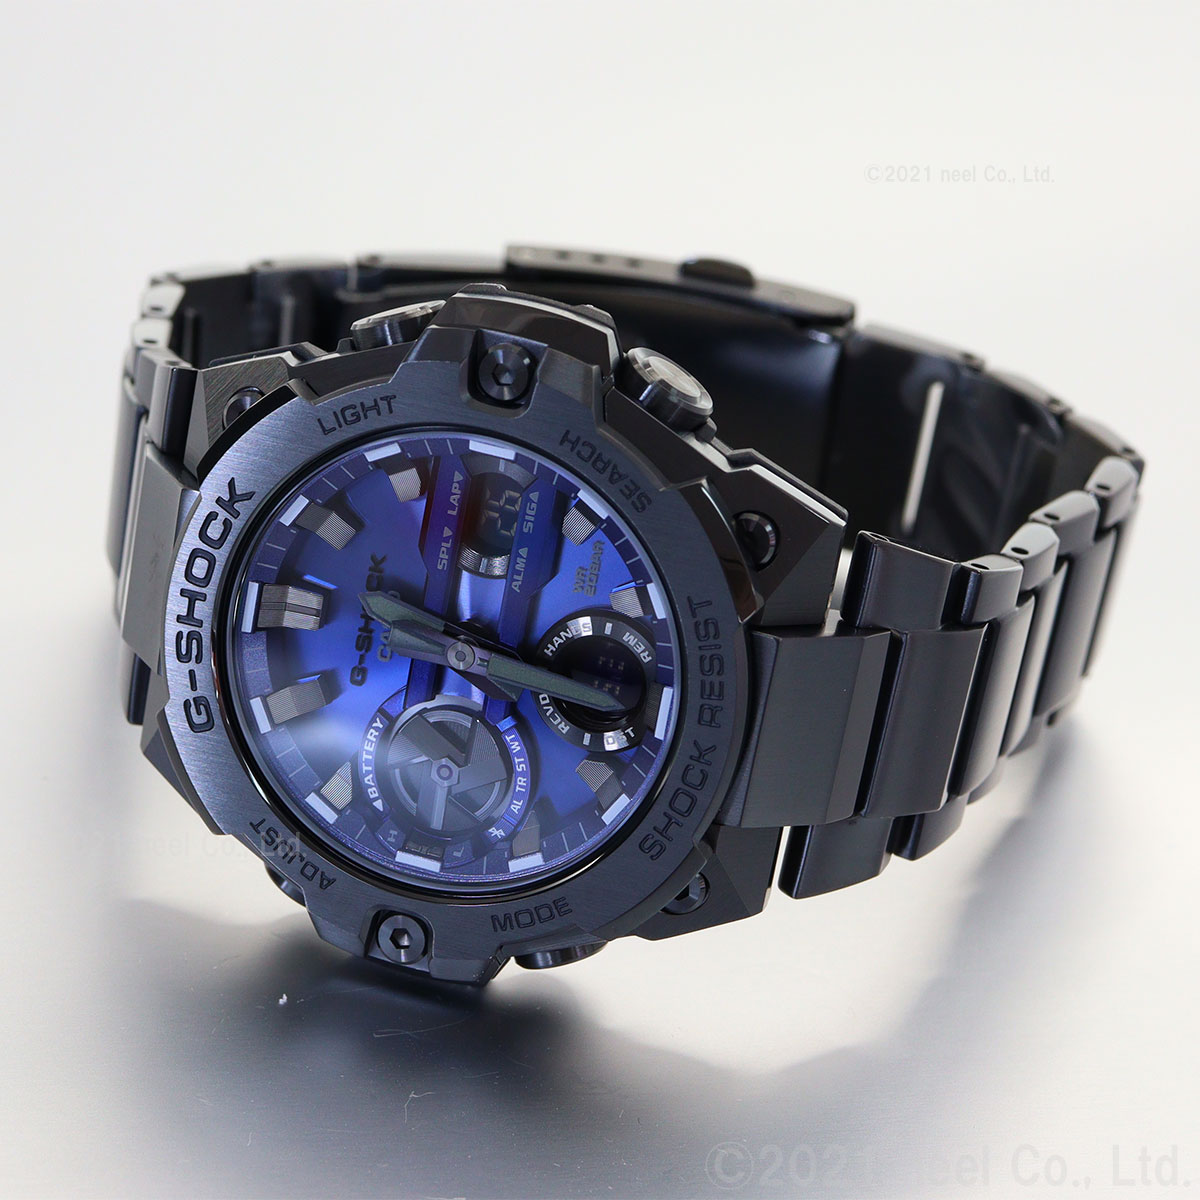 31％割引【超特価sale開催】 超人気モデル カシオ G-SHOCK GST-B400BD-1A2JF 腕時計(デジタル) メンズ